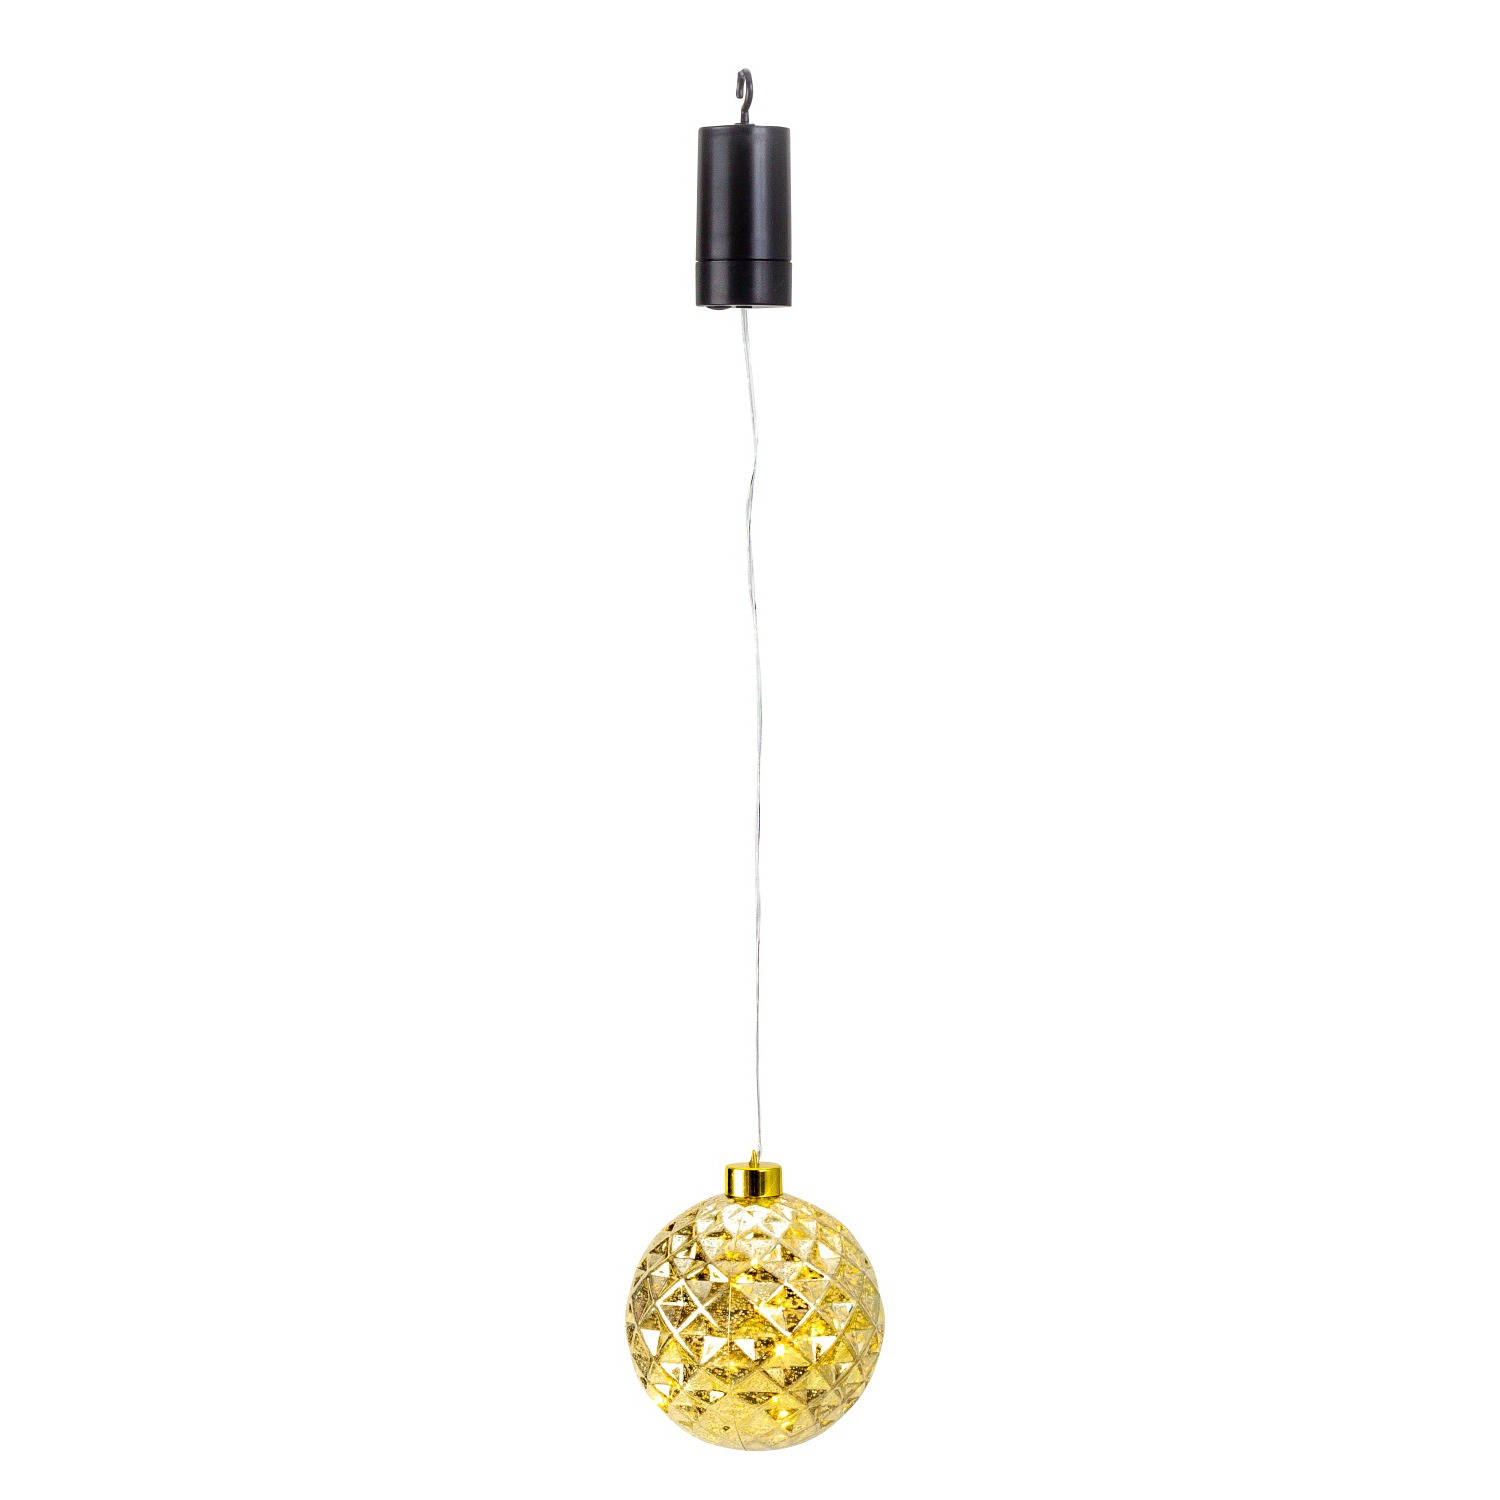 IKO verlichte kerstbal kunststof - goud - aan draad - D12 cm - led lampjes - warm wit